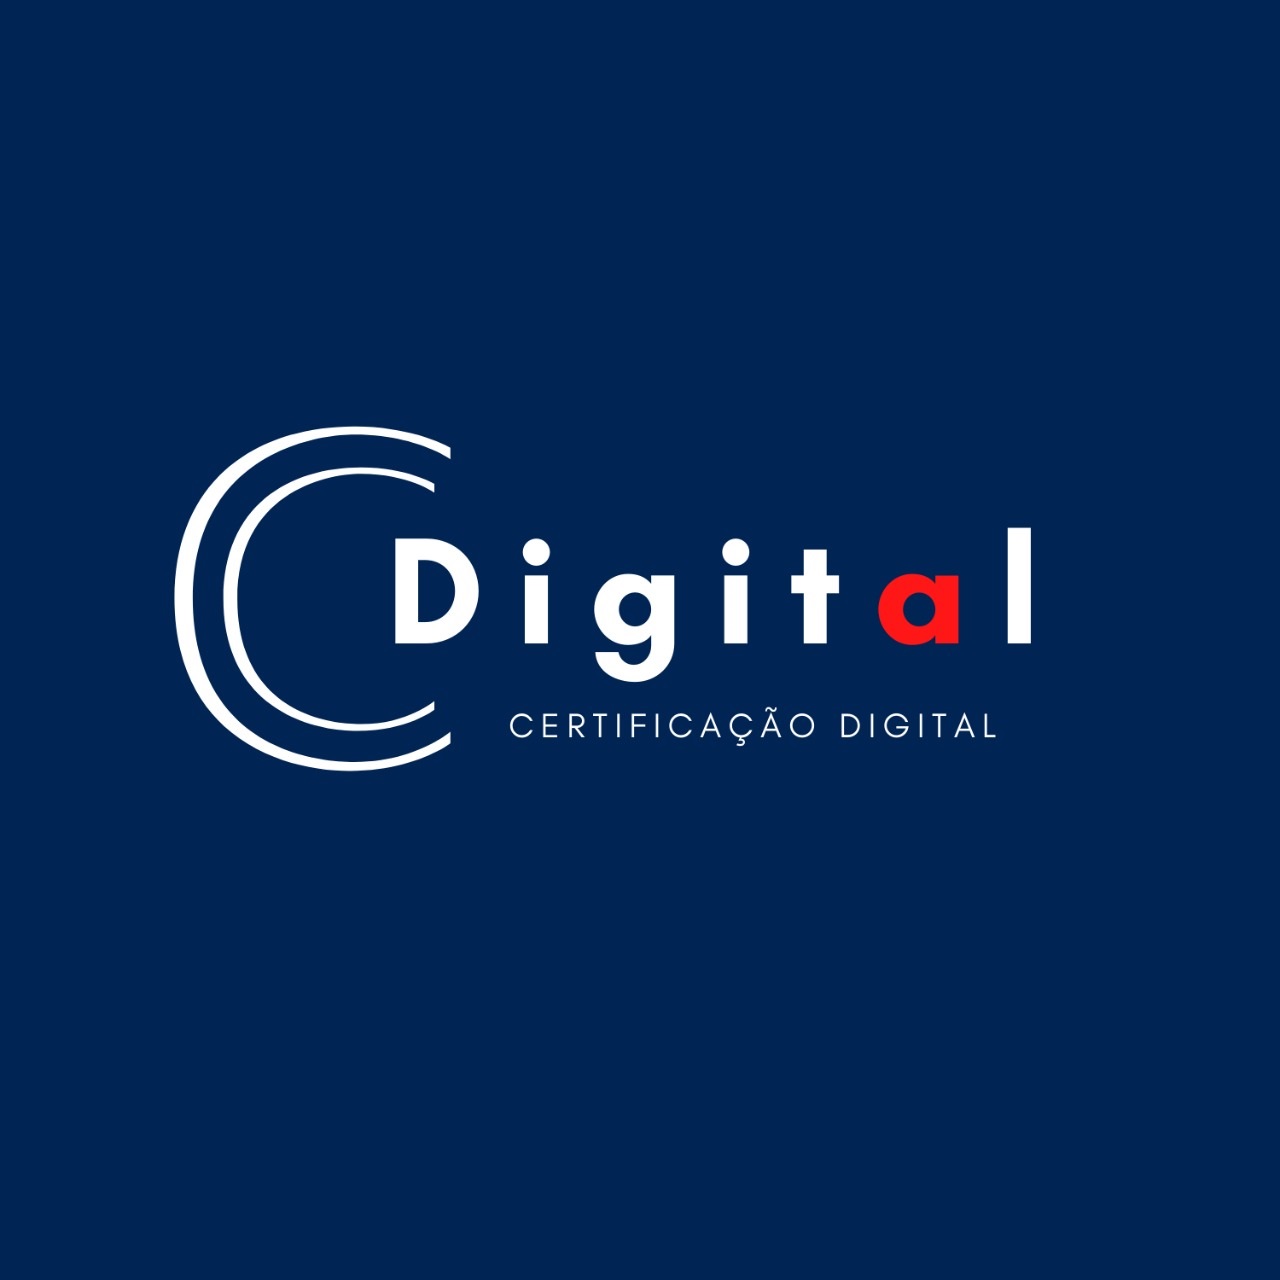 Logotipo do parceiro AR Cdigital &#8211; Cafre Contabilidade &#8211; 5%